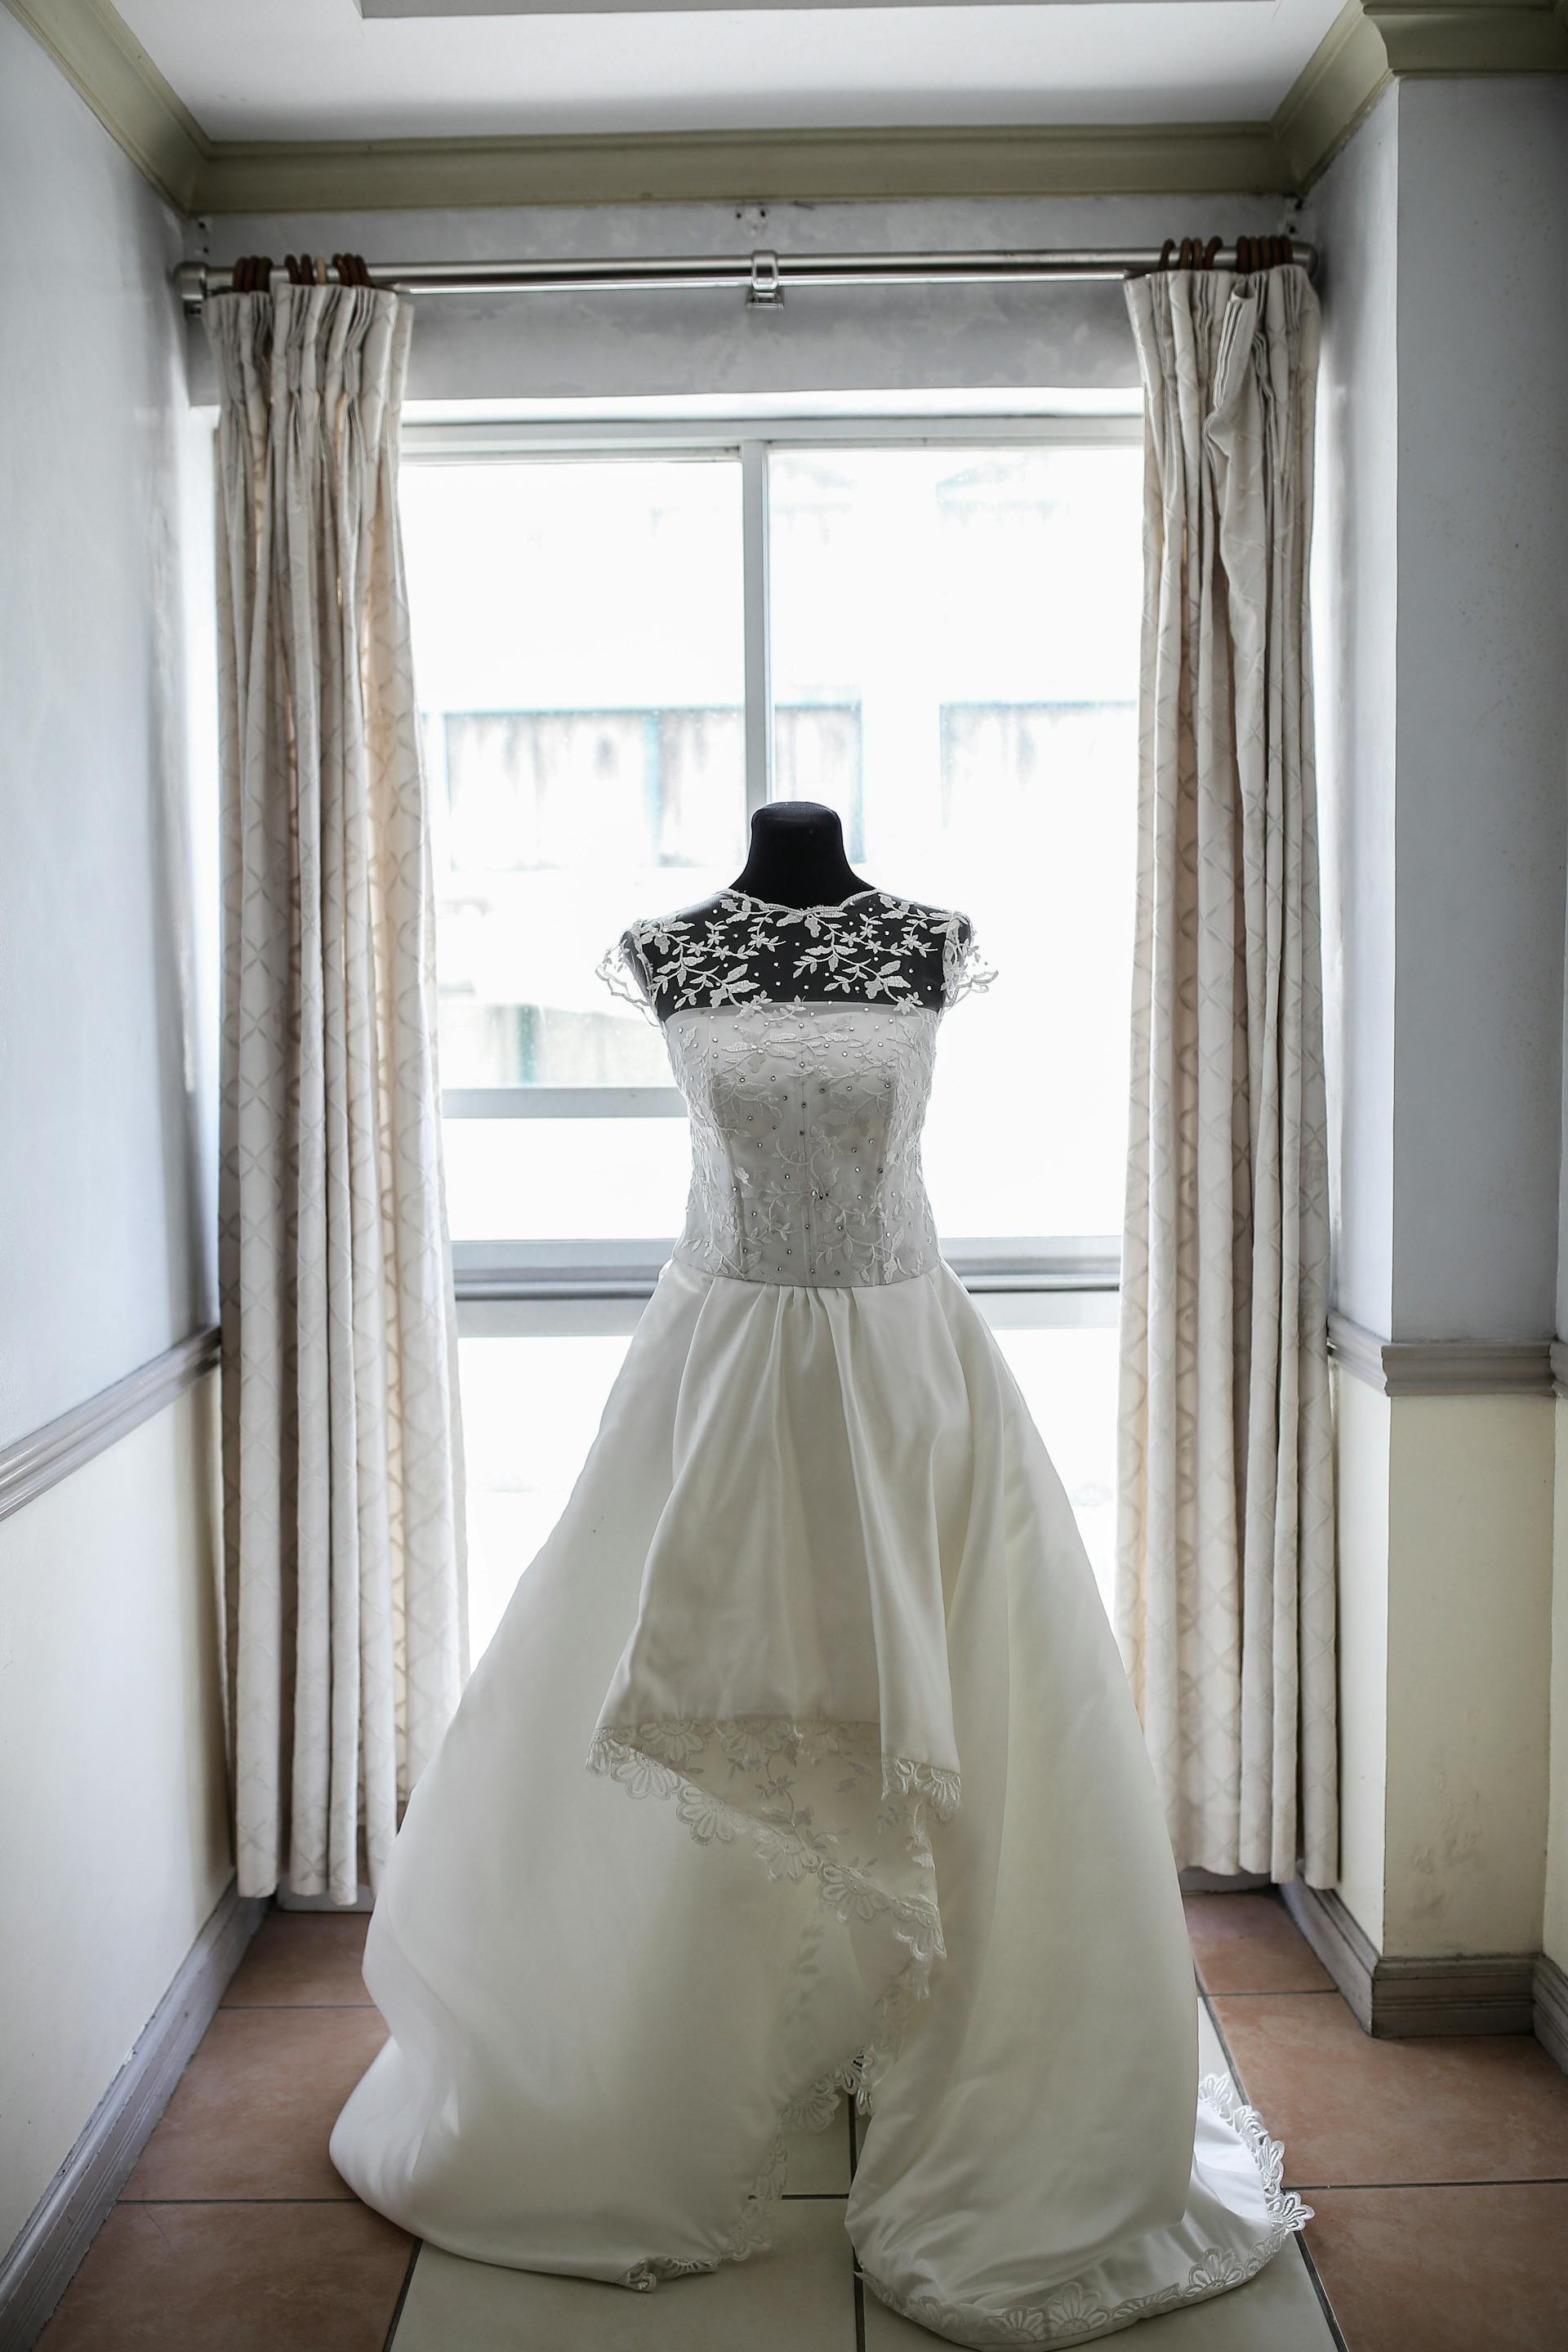 Ein Hochzeitskleid auf einer Schaufensterpuppe | Quelle: Pexels